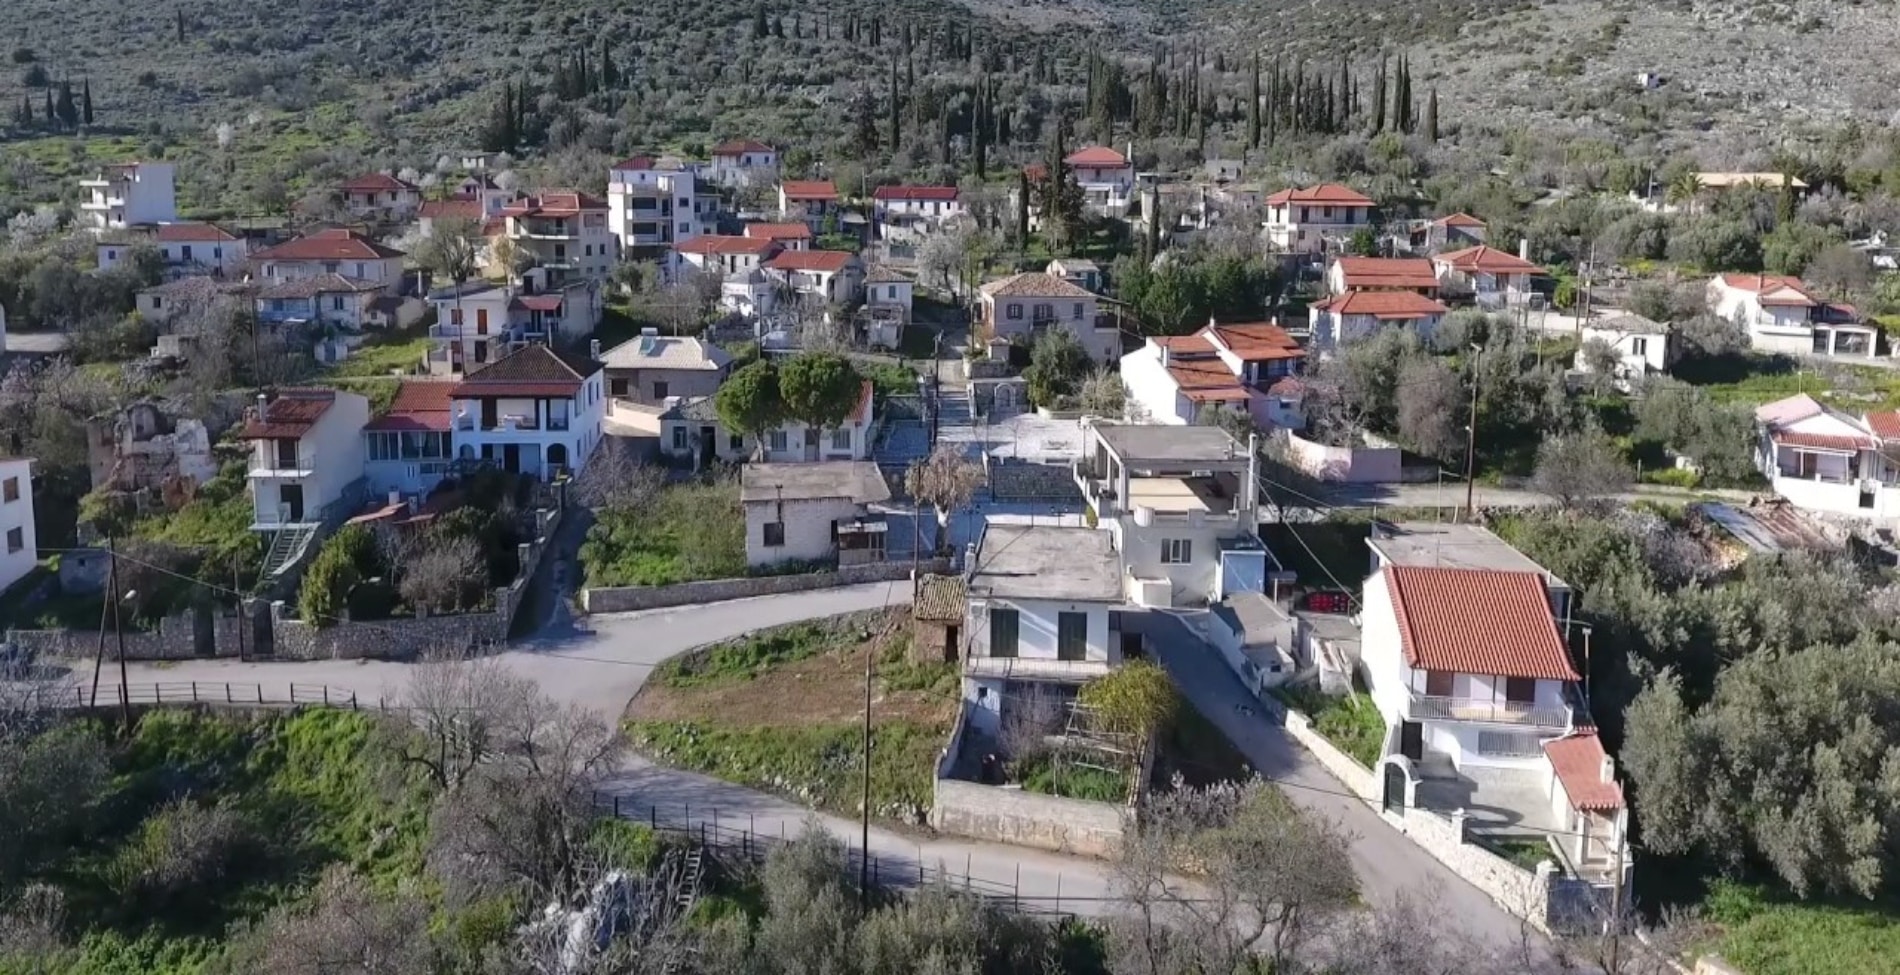 Αυτό το ελληνικό χωριό είναι στην πραγματικότητα η Κολοπετινίτσα1